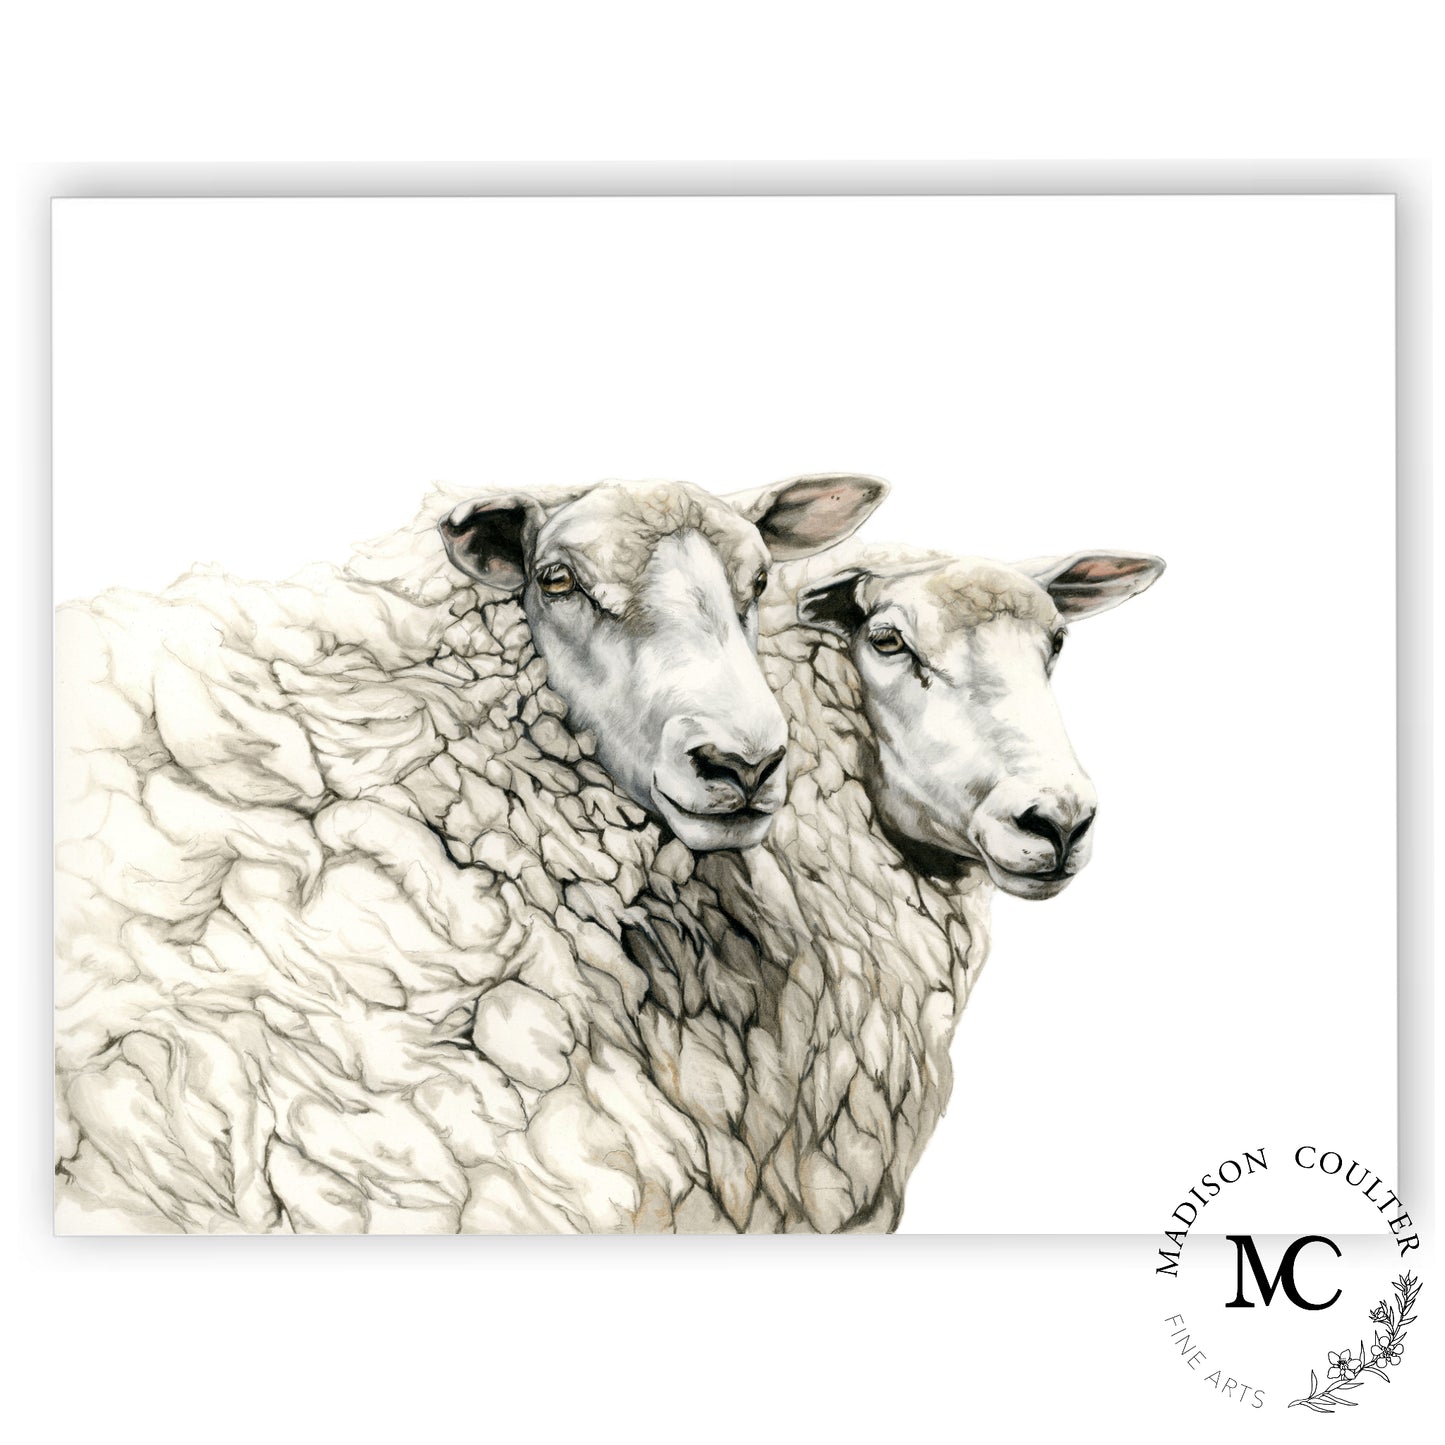 Portrait de mouton